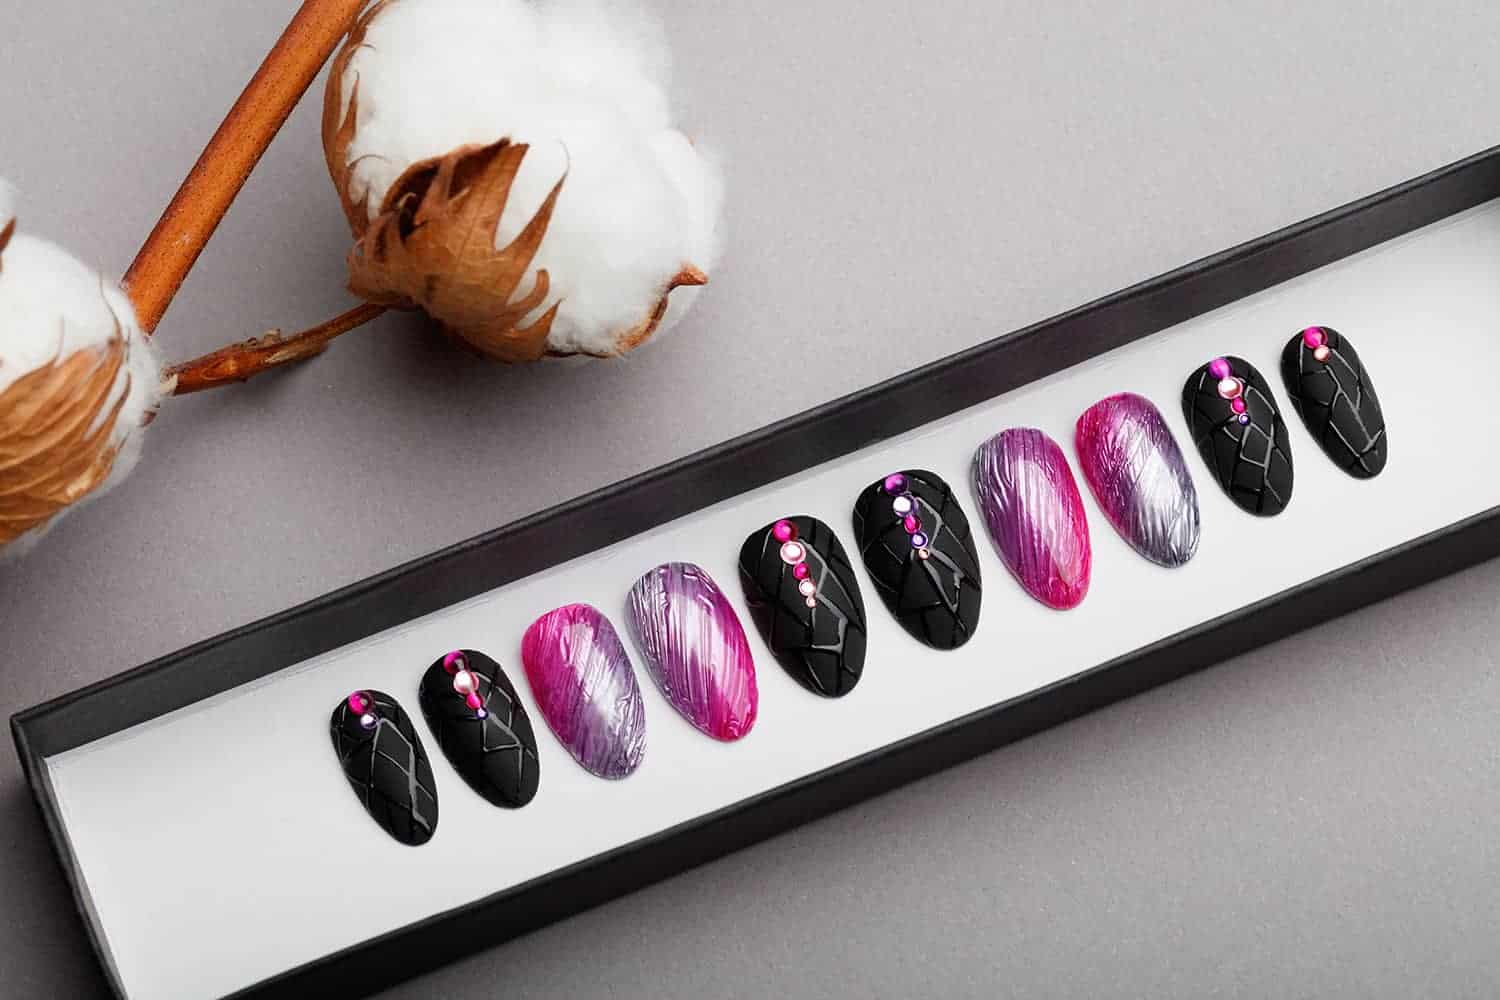 Amazing Texture Silver & Pink Press on Nails | Black Nails | Modern Nails | Hand painted Nail Art | Fake Nails | False Nails